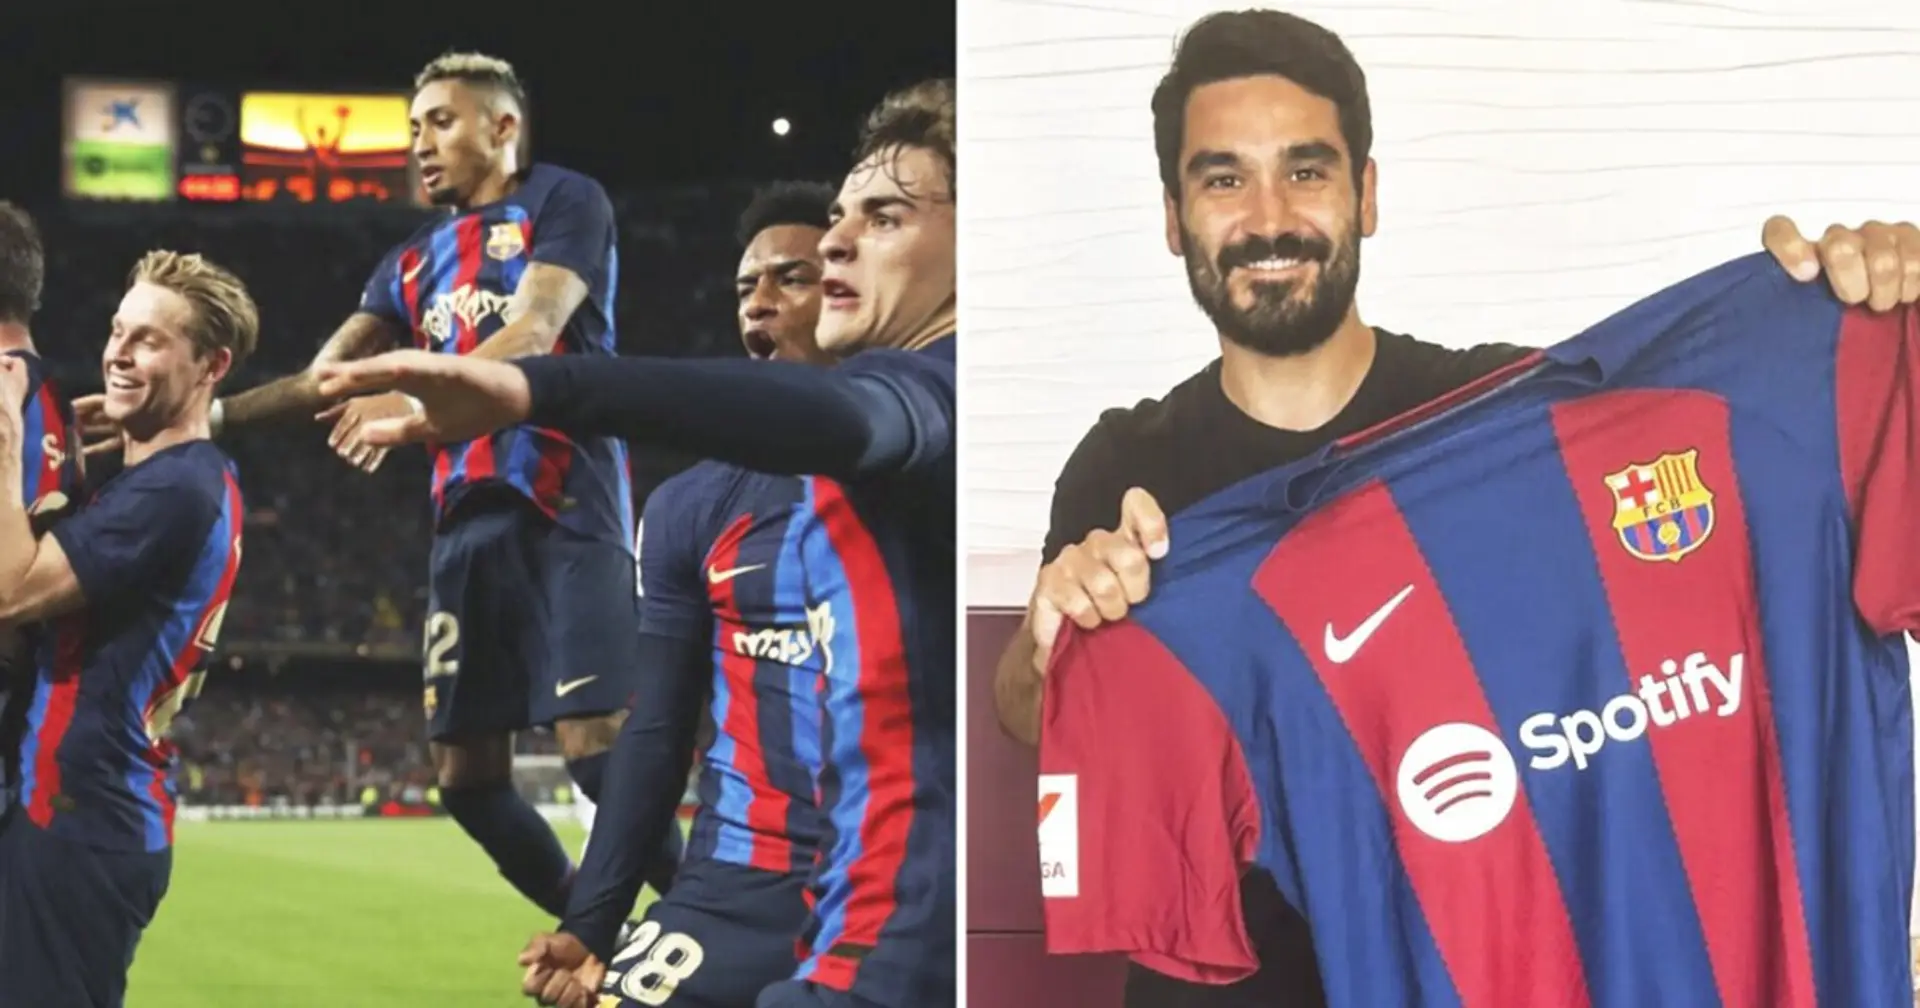 Gündogan ist jetzt offiziell ein Spieler des FC Barcelona. Einer der wichtigsten Spieler des Vereins ist unzufrieden mit dem Transfer